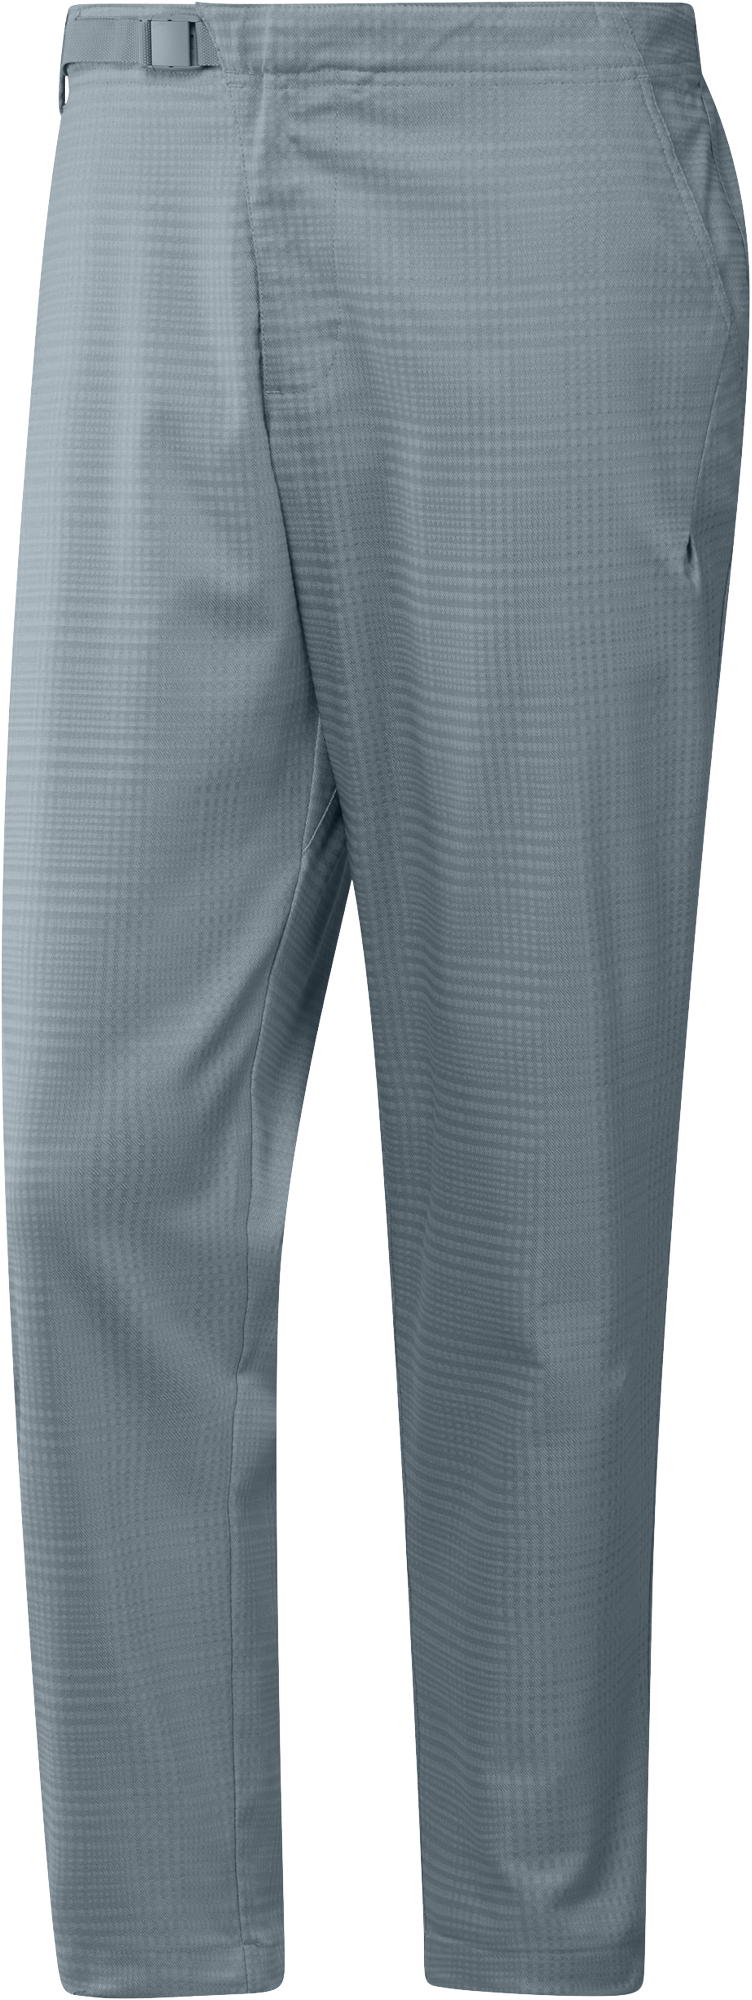 adidas Adicross Futura Pant, grey